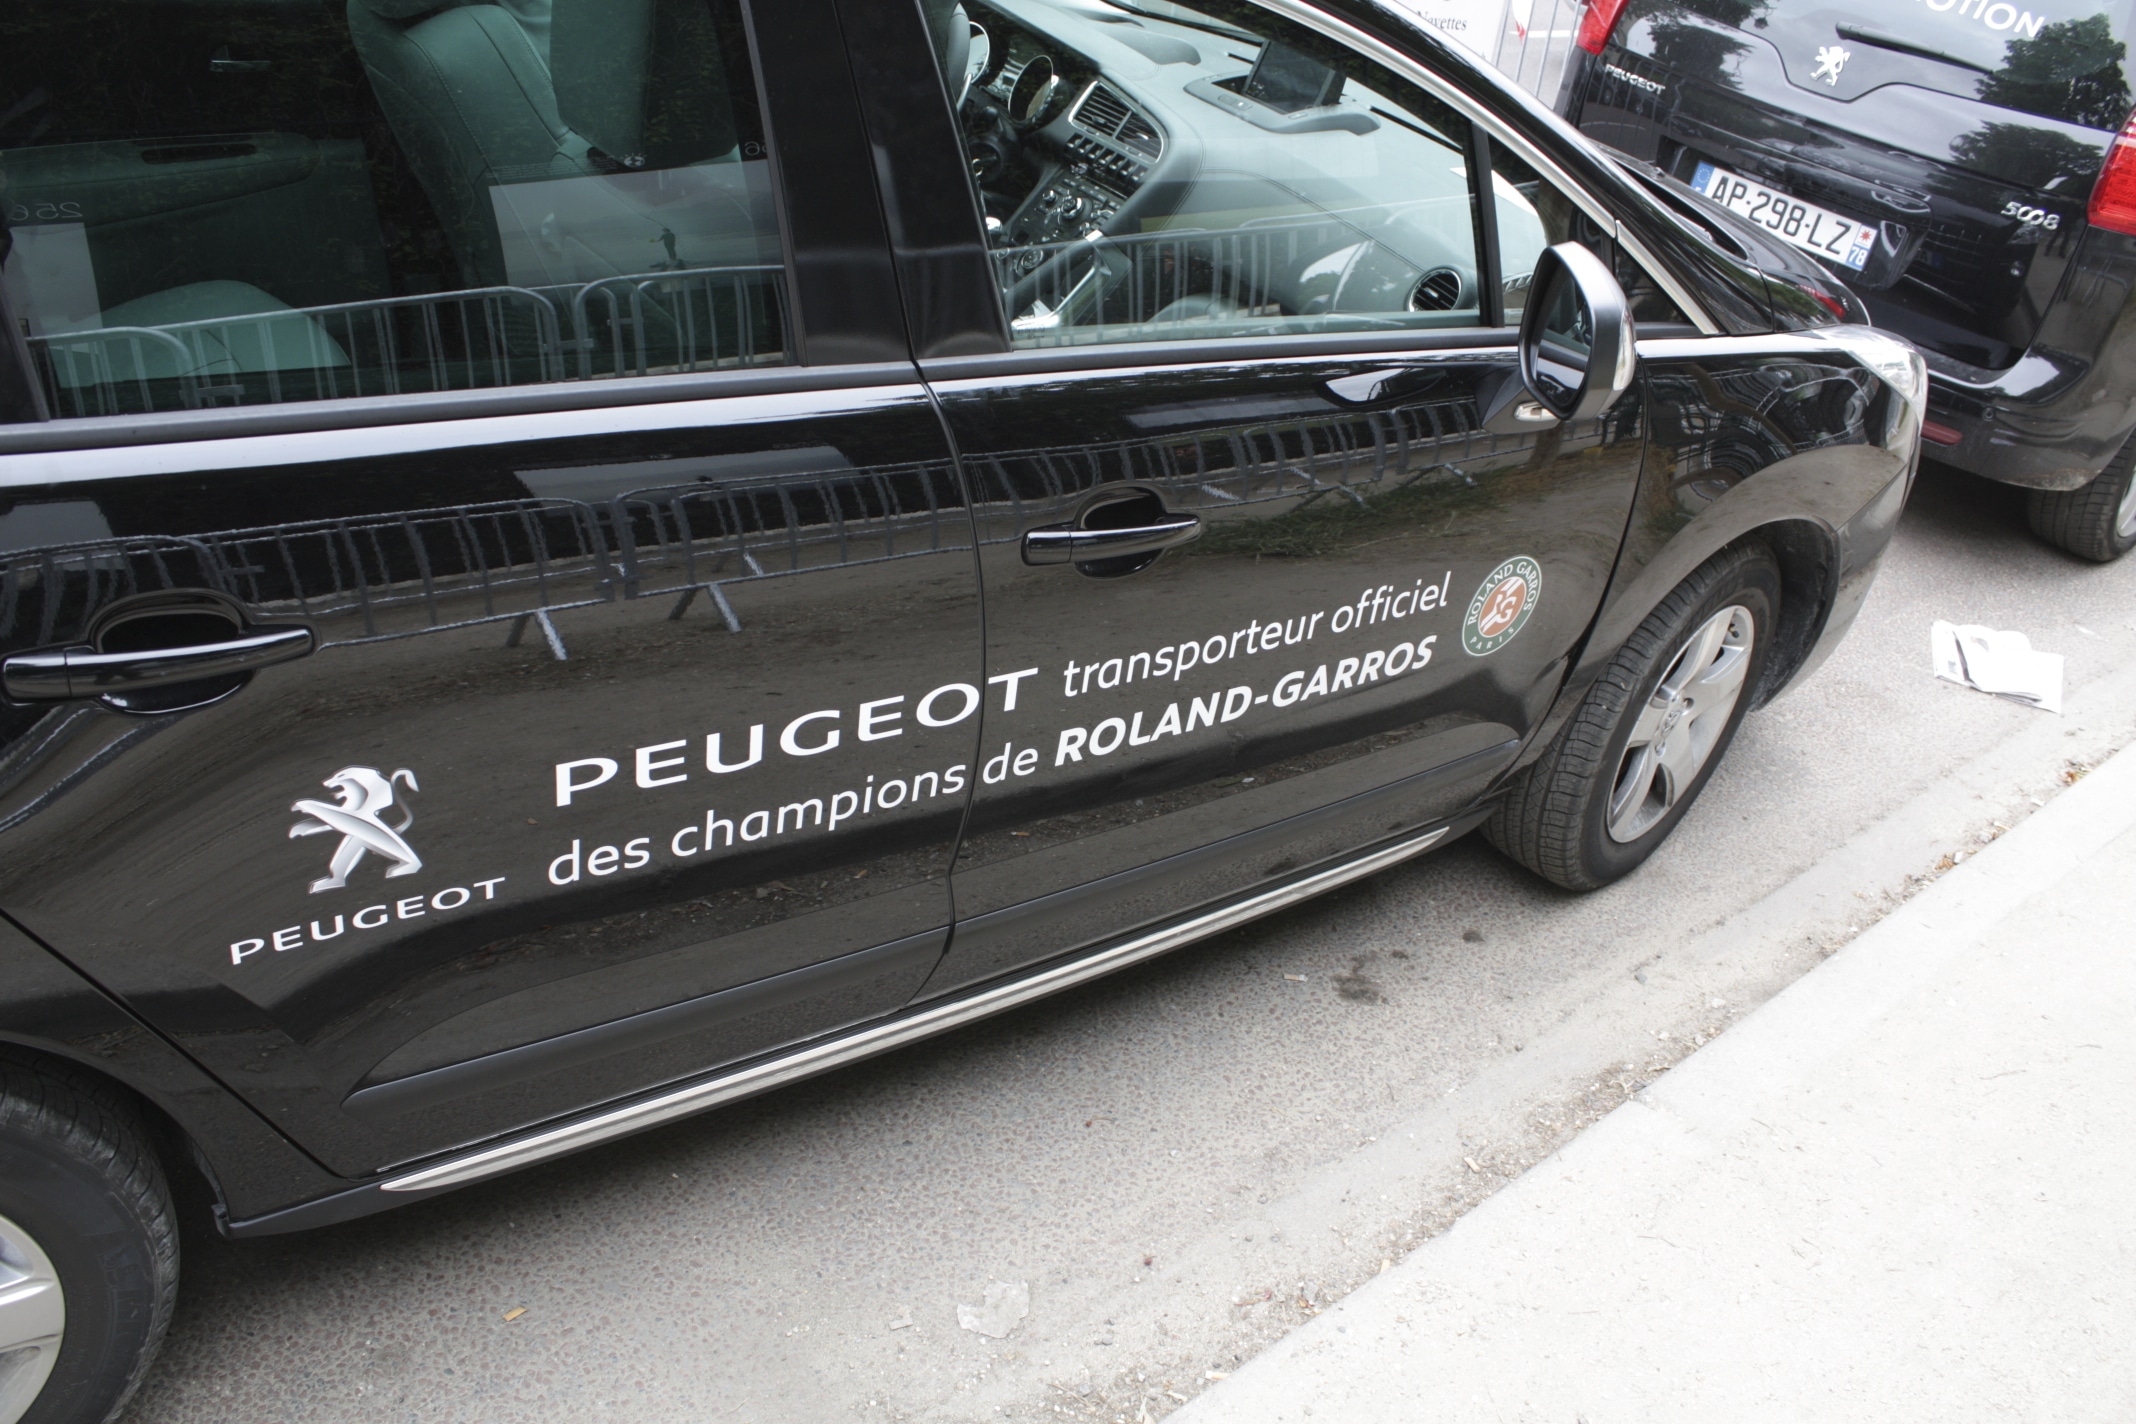 Typographies d'identité Peugeot. Applications des typographies. Voiture officielle Roland-Garros.